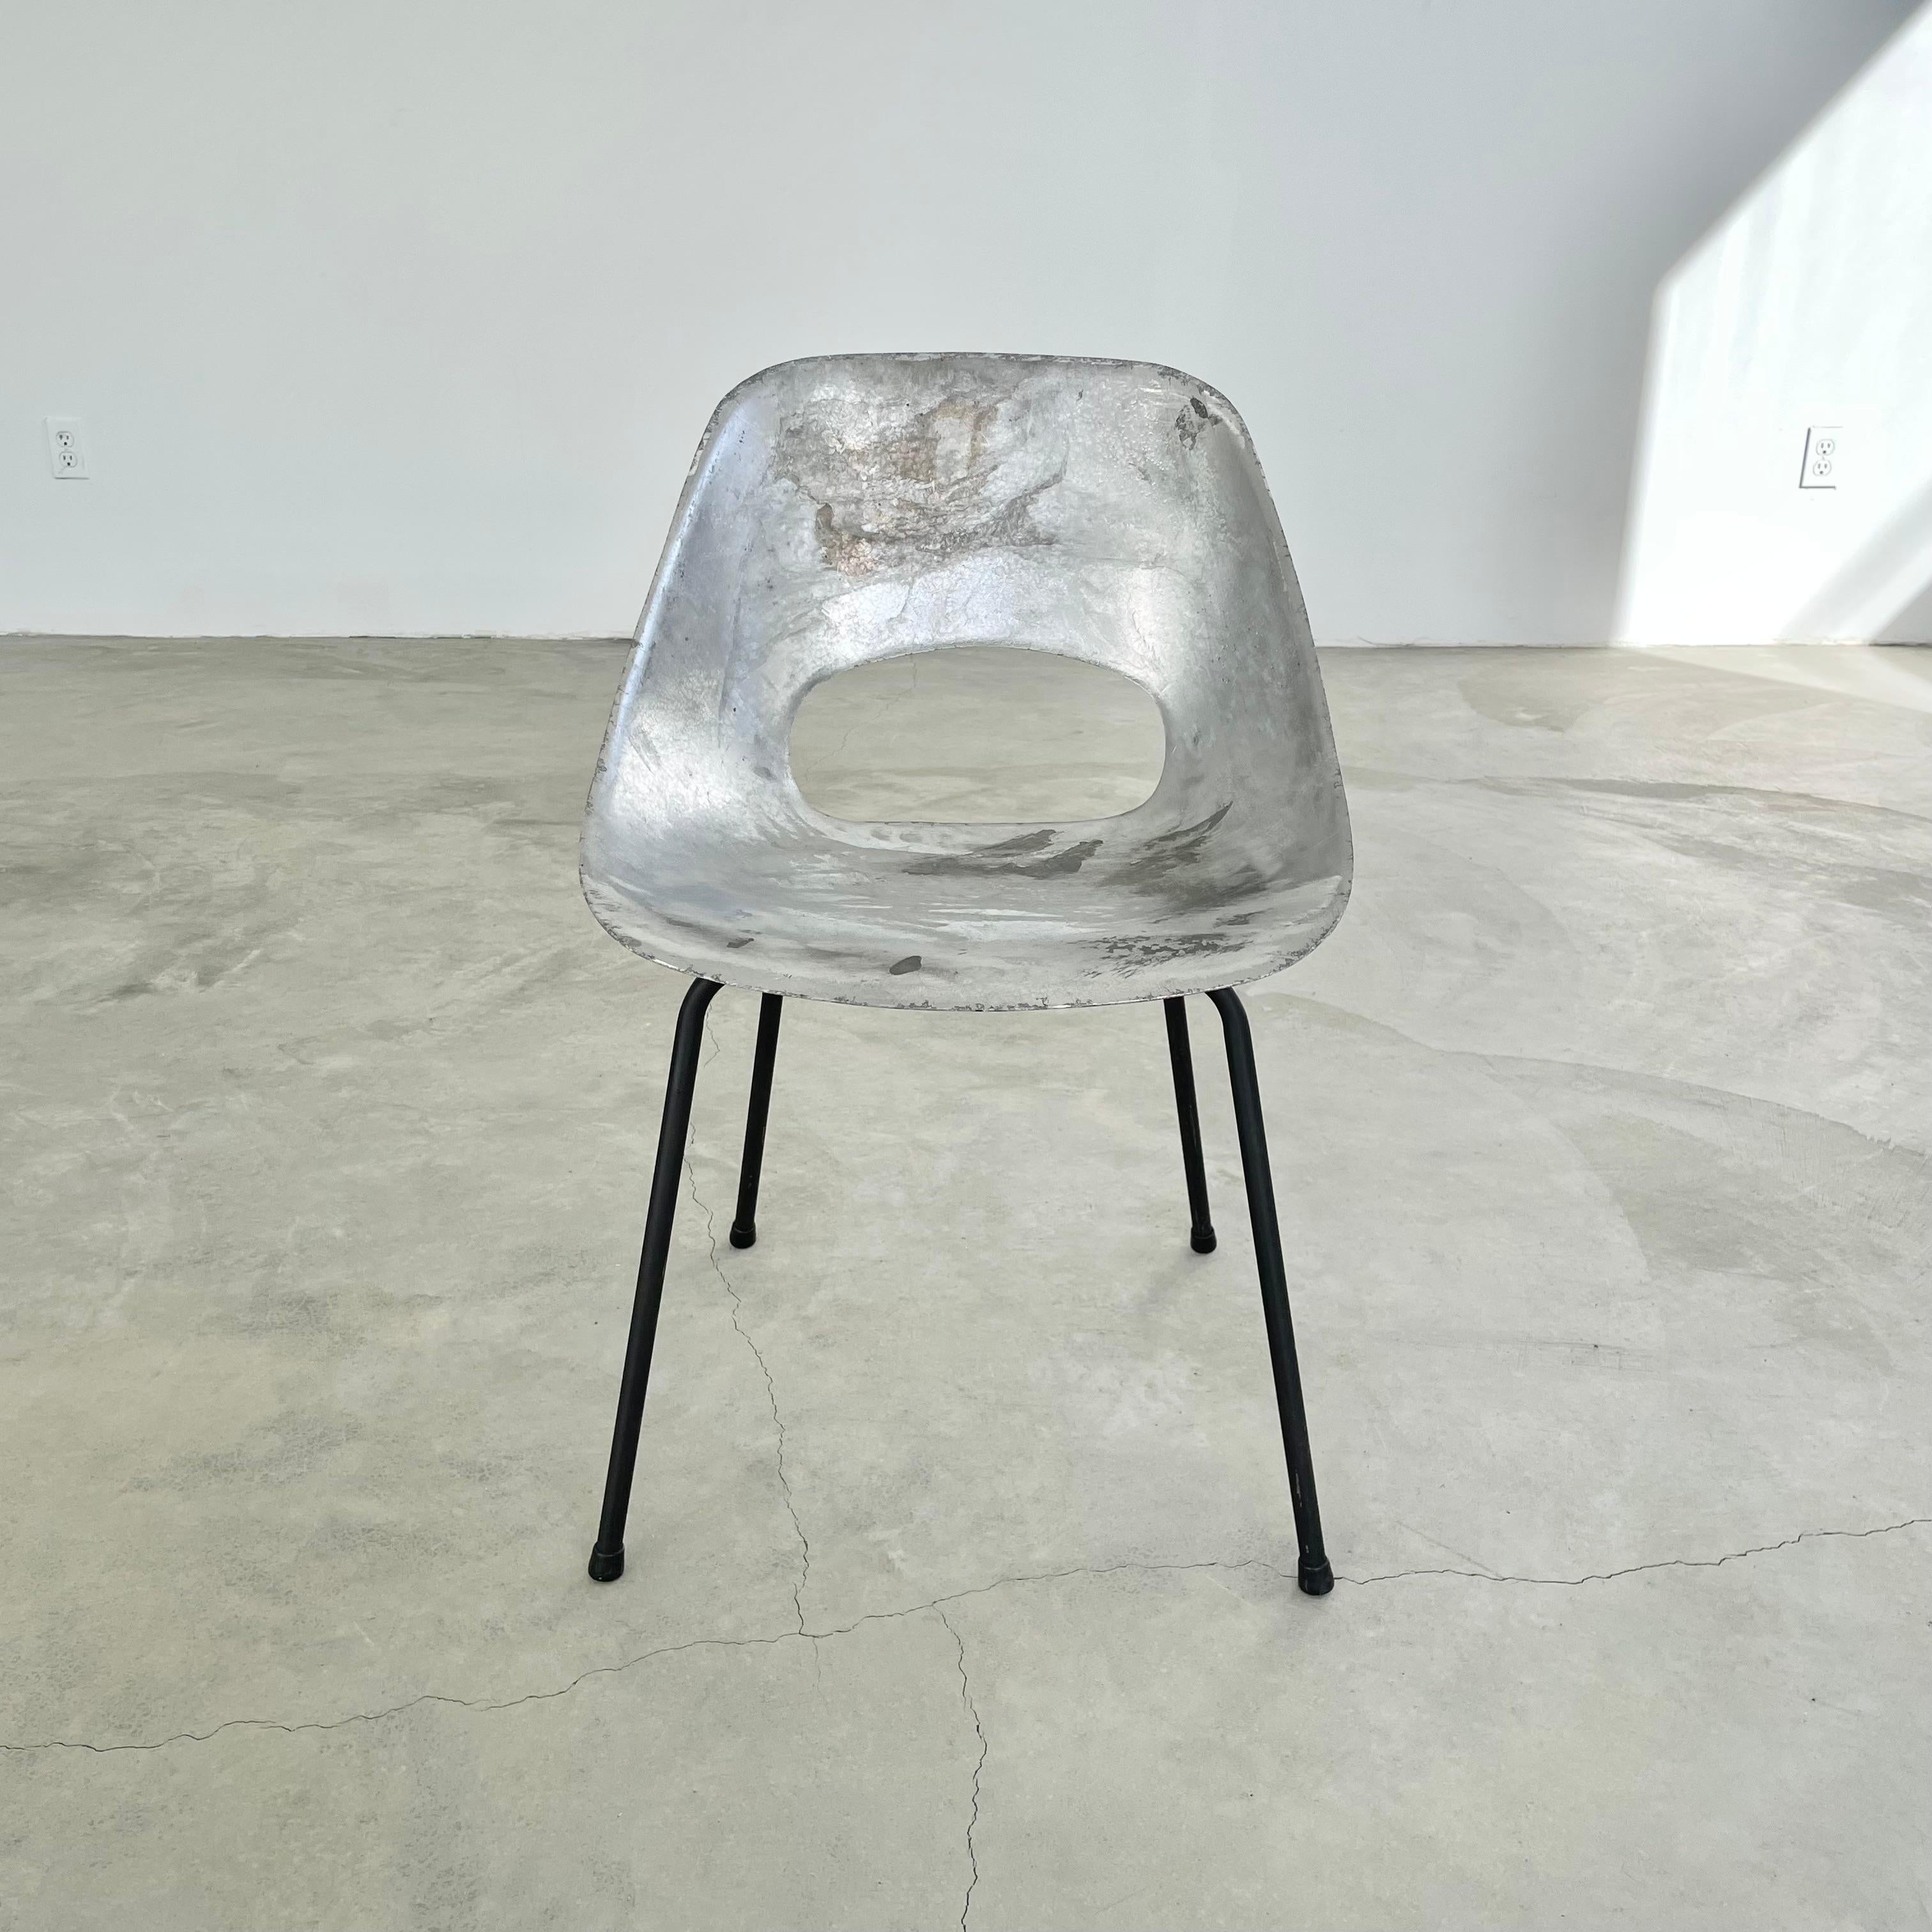 Magnifiques chaises en aluminium de Pierre Guariche. Le cadre en aluminium moulé repose sur quatre pieds en fer. Très bon état vintage et design minimaliste. Extrêmement rare. La beauté non conventionnelle de ces chaises en fait une pièce à part